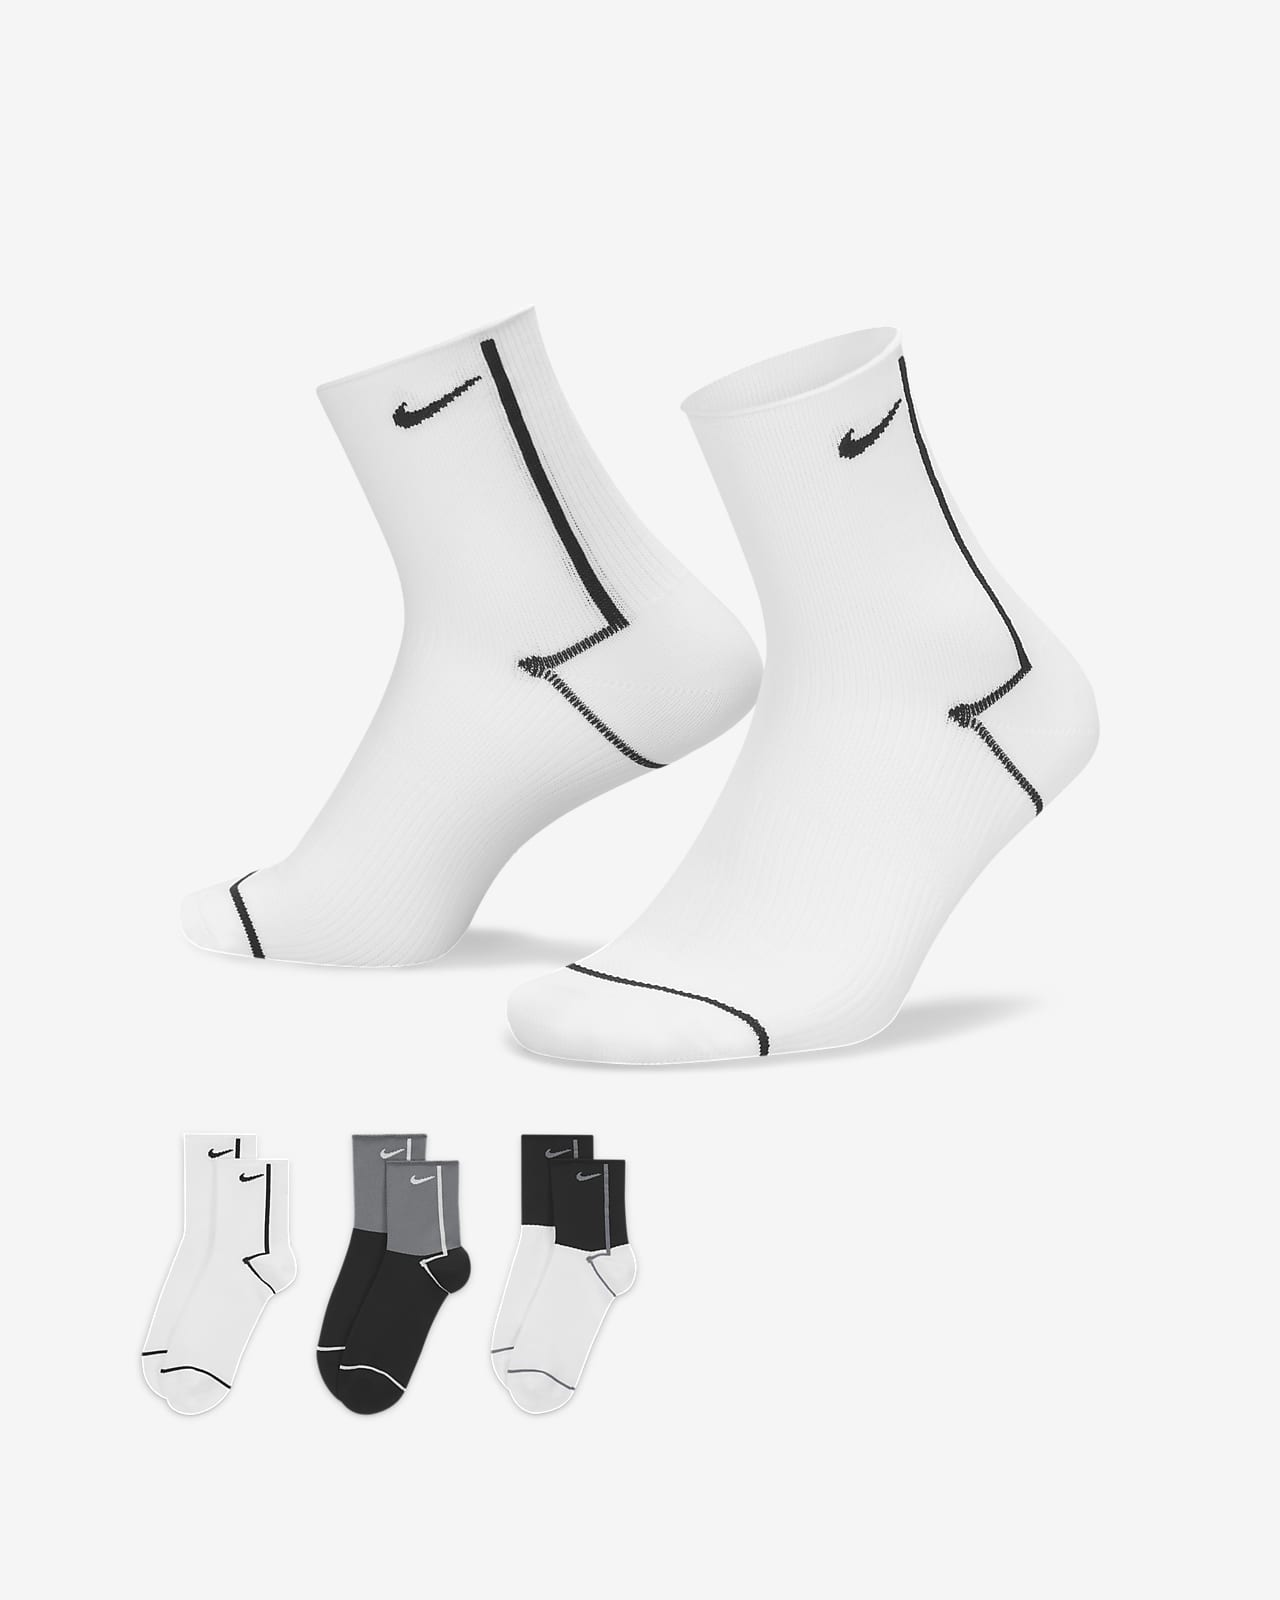 Dámské kotníkové tréninkové ponožky Nike Everyday Plus Lightweight (3 páry)